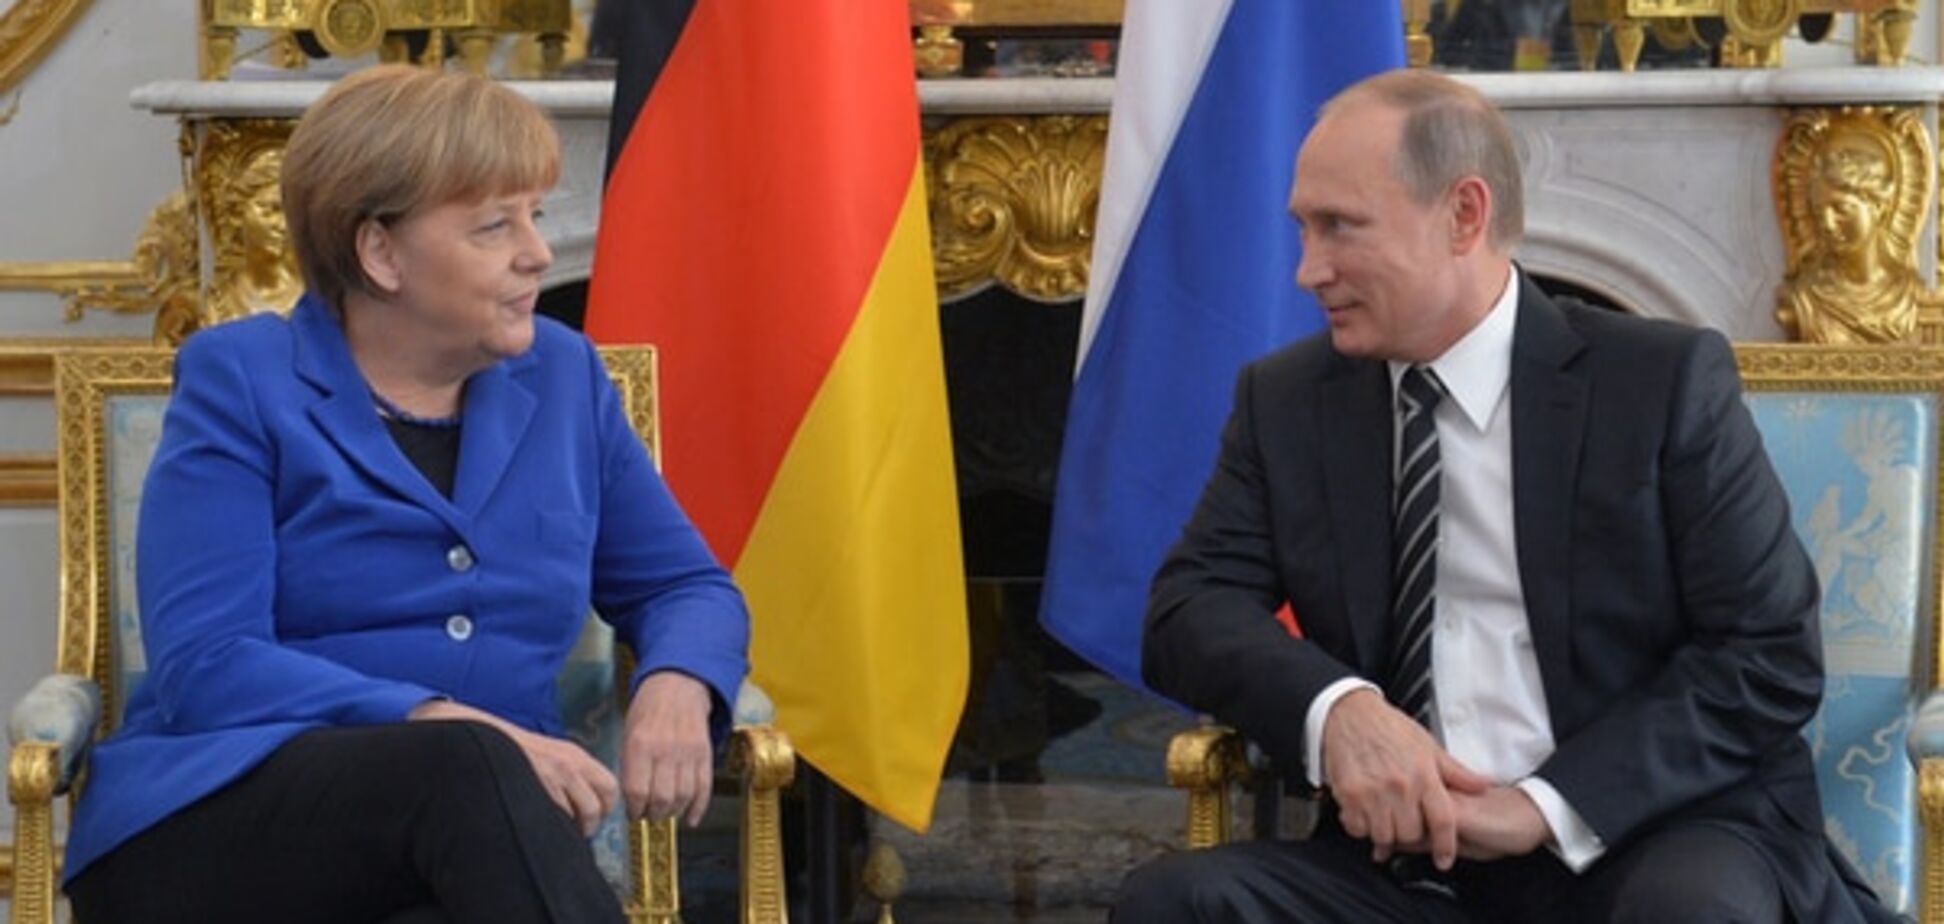 Пєсков розповів, про що 'шепотілися' Путін і Меркель